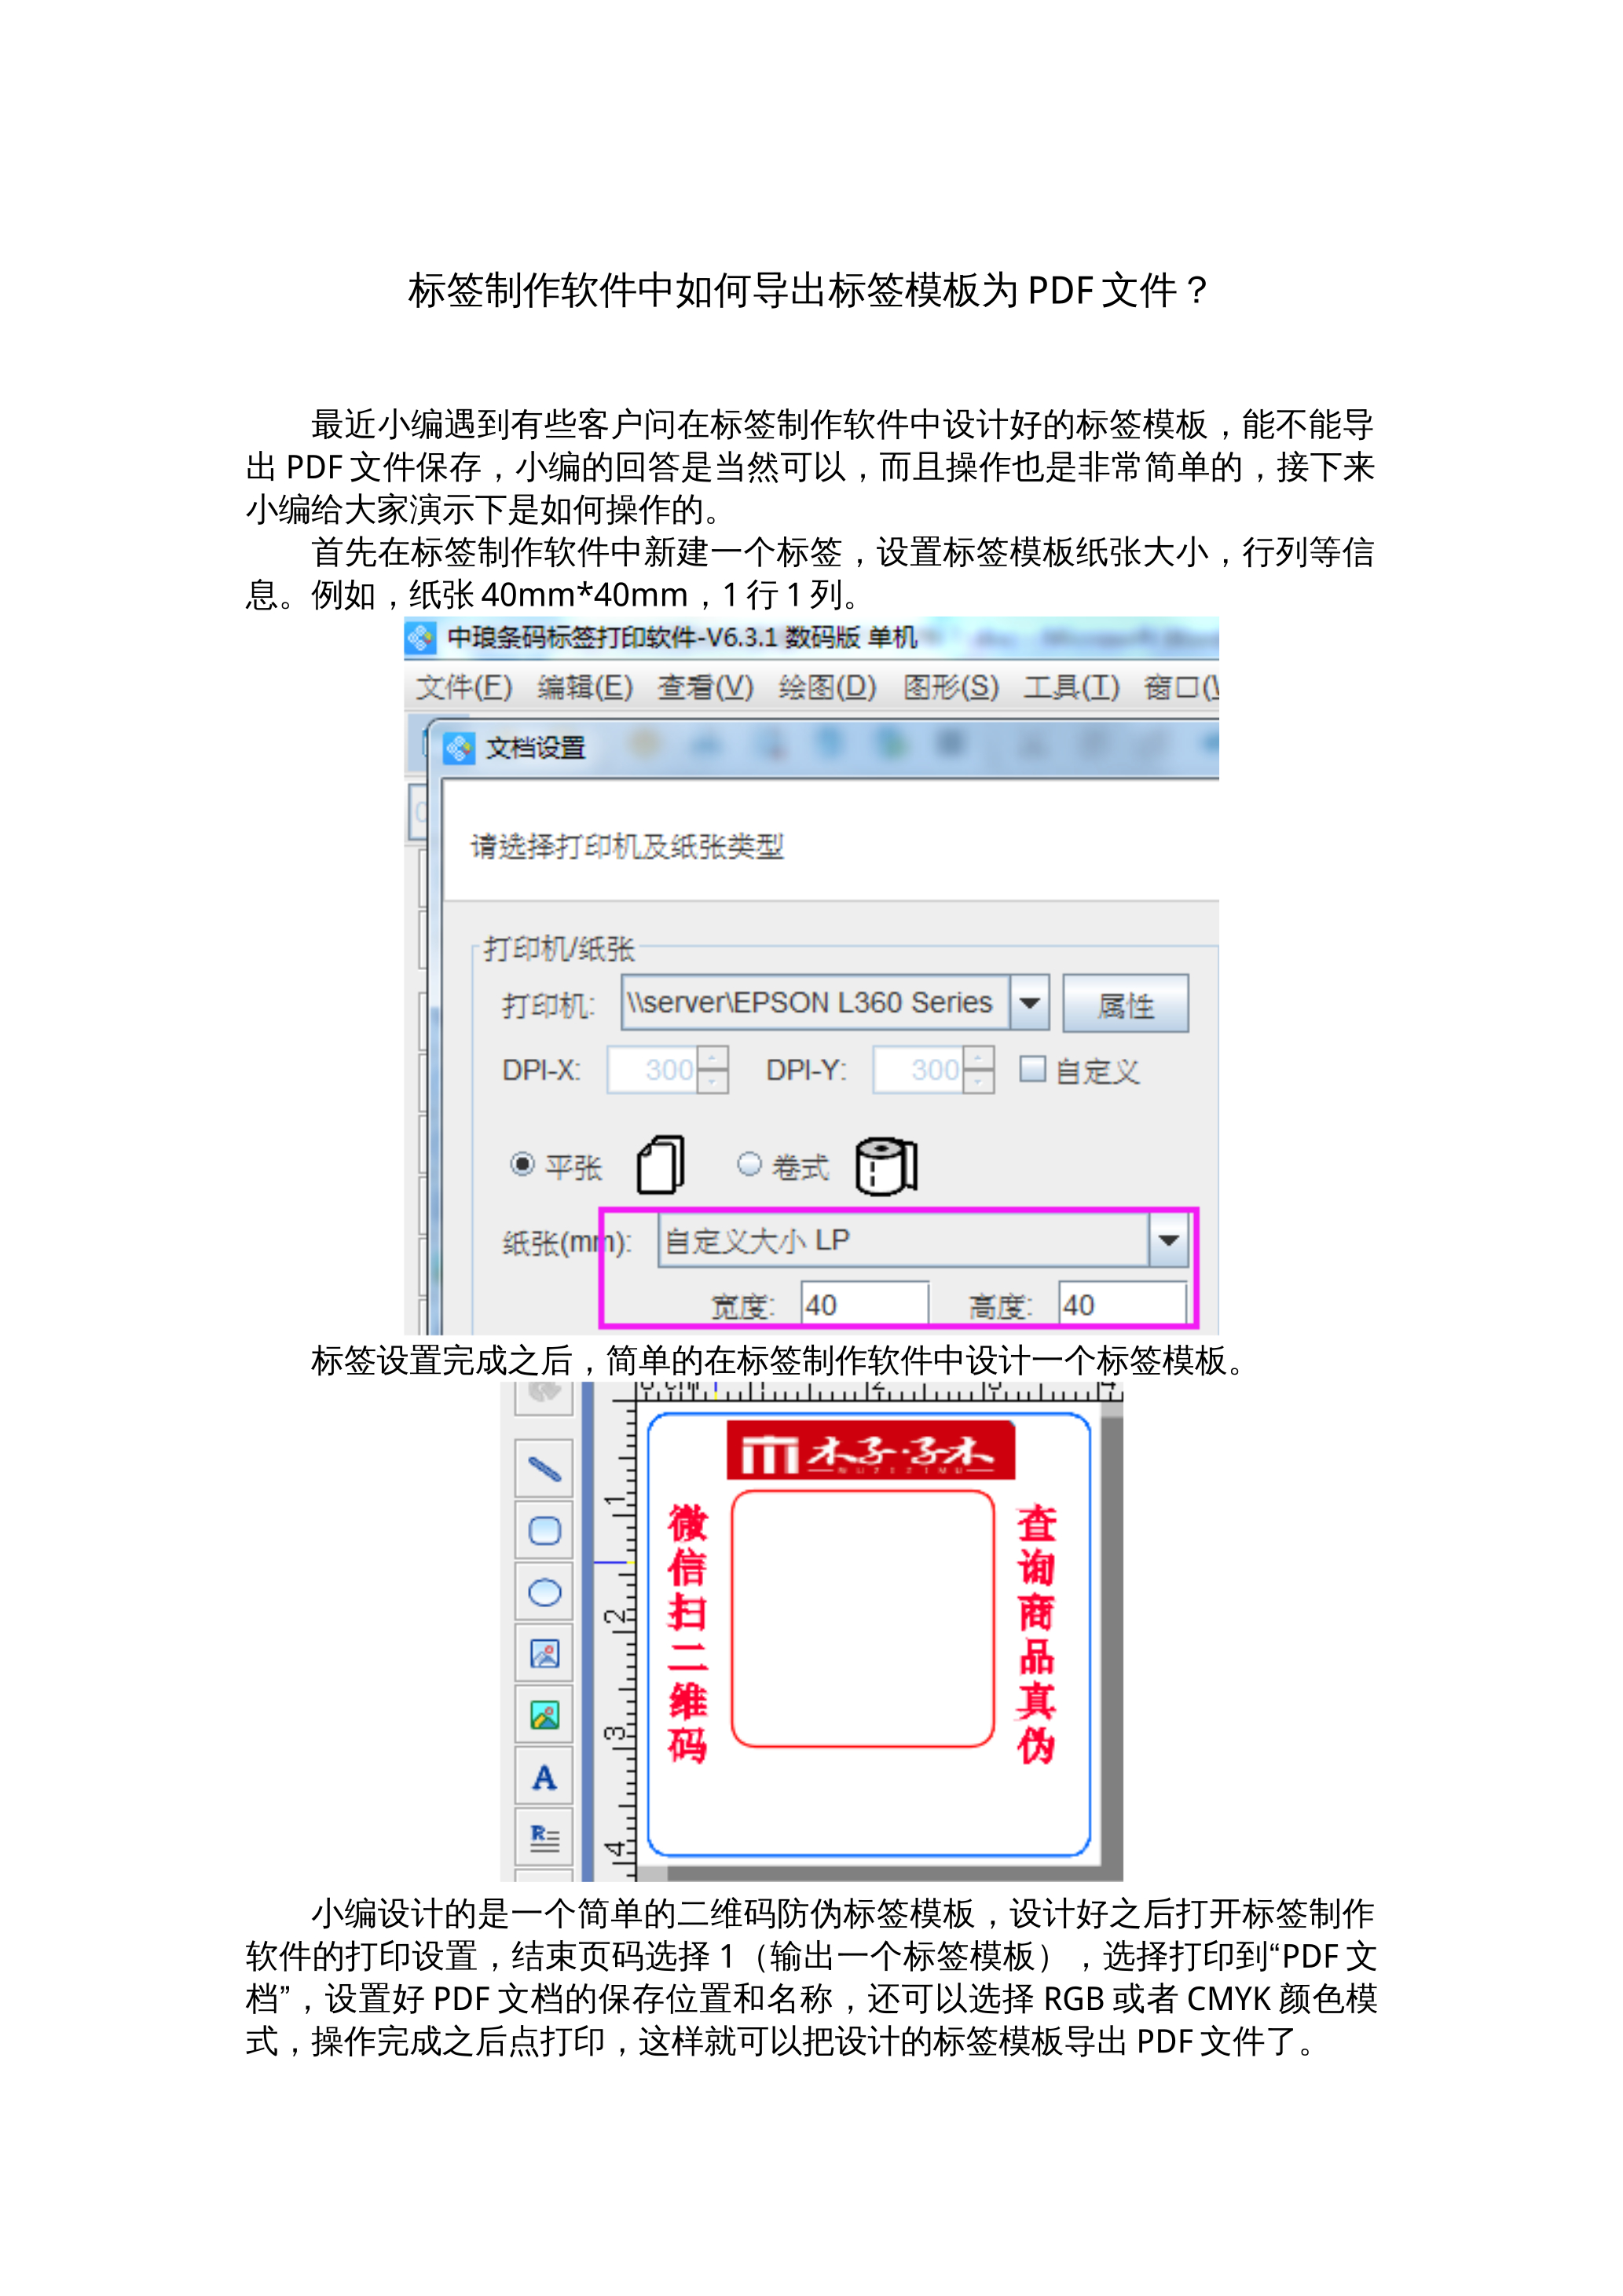 标签打印软件中如何导出标签模板为PDF文档？ 封面